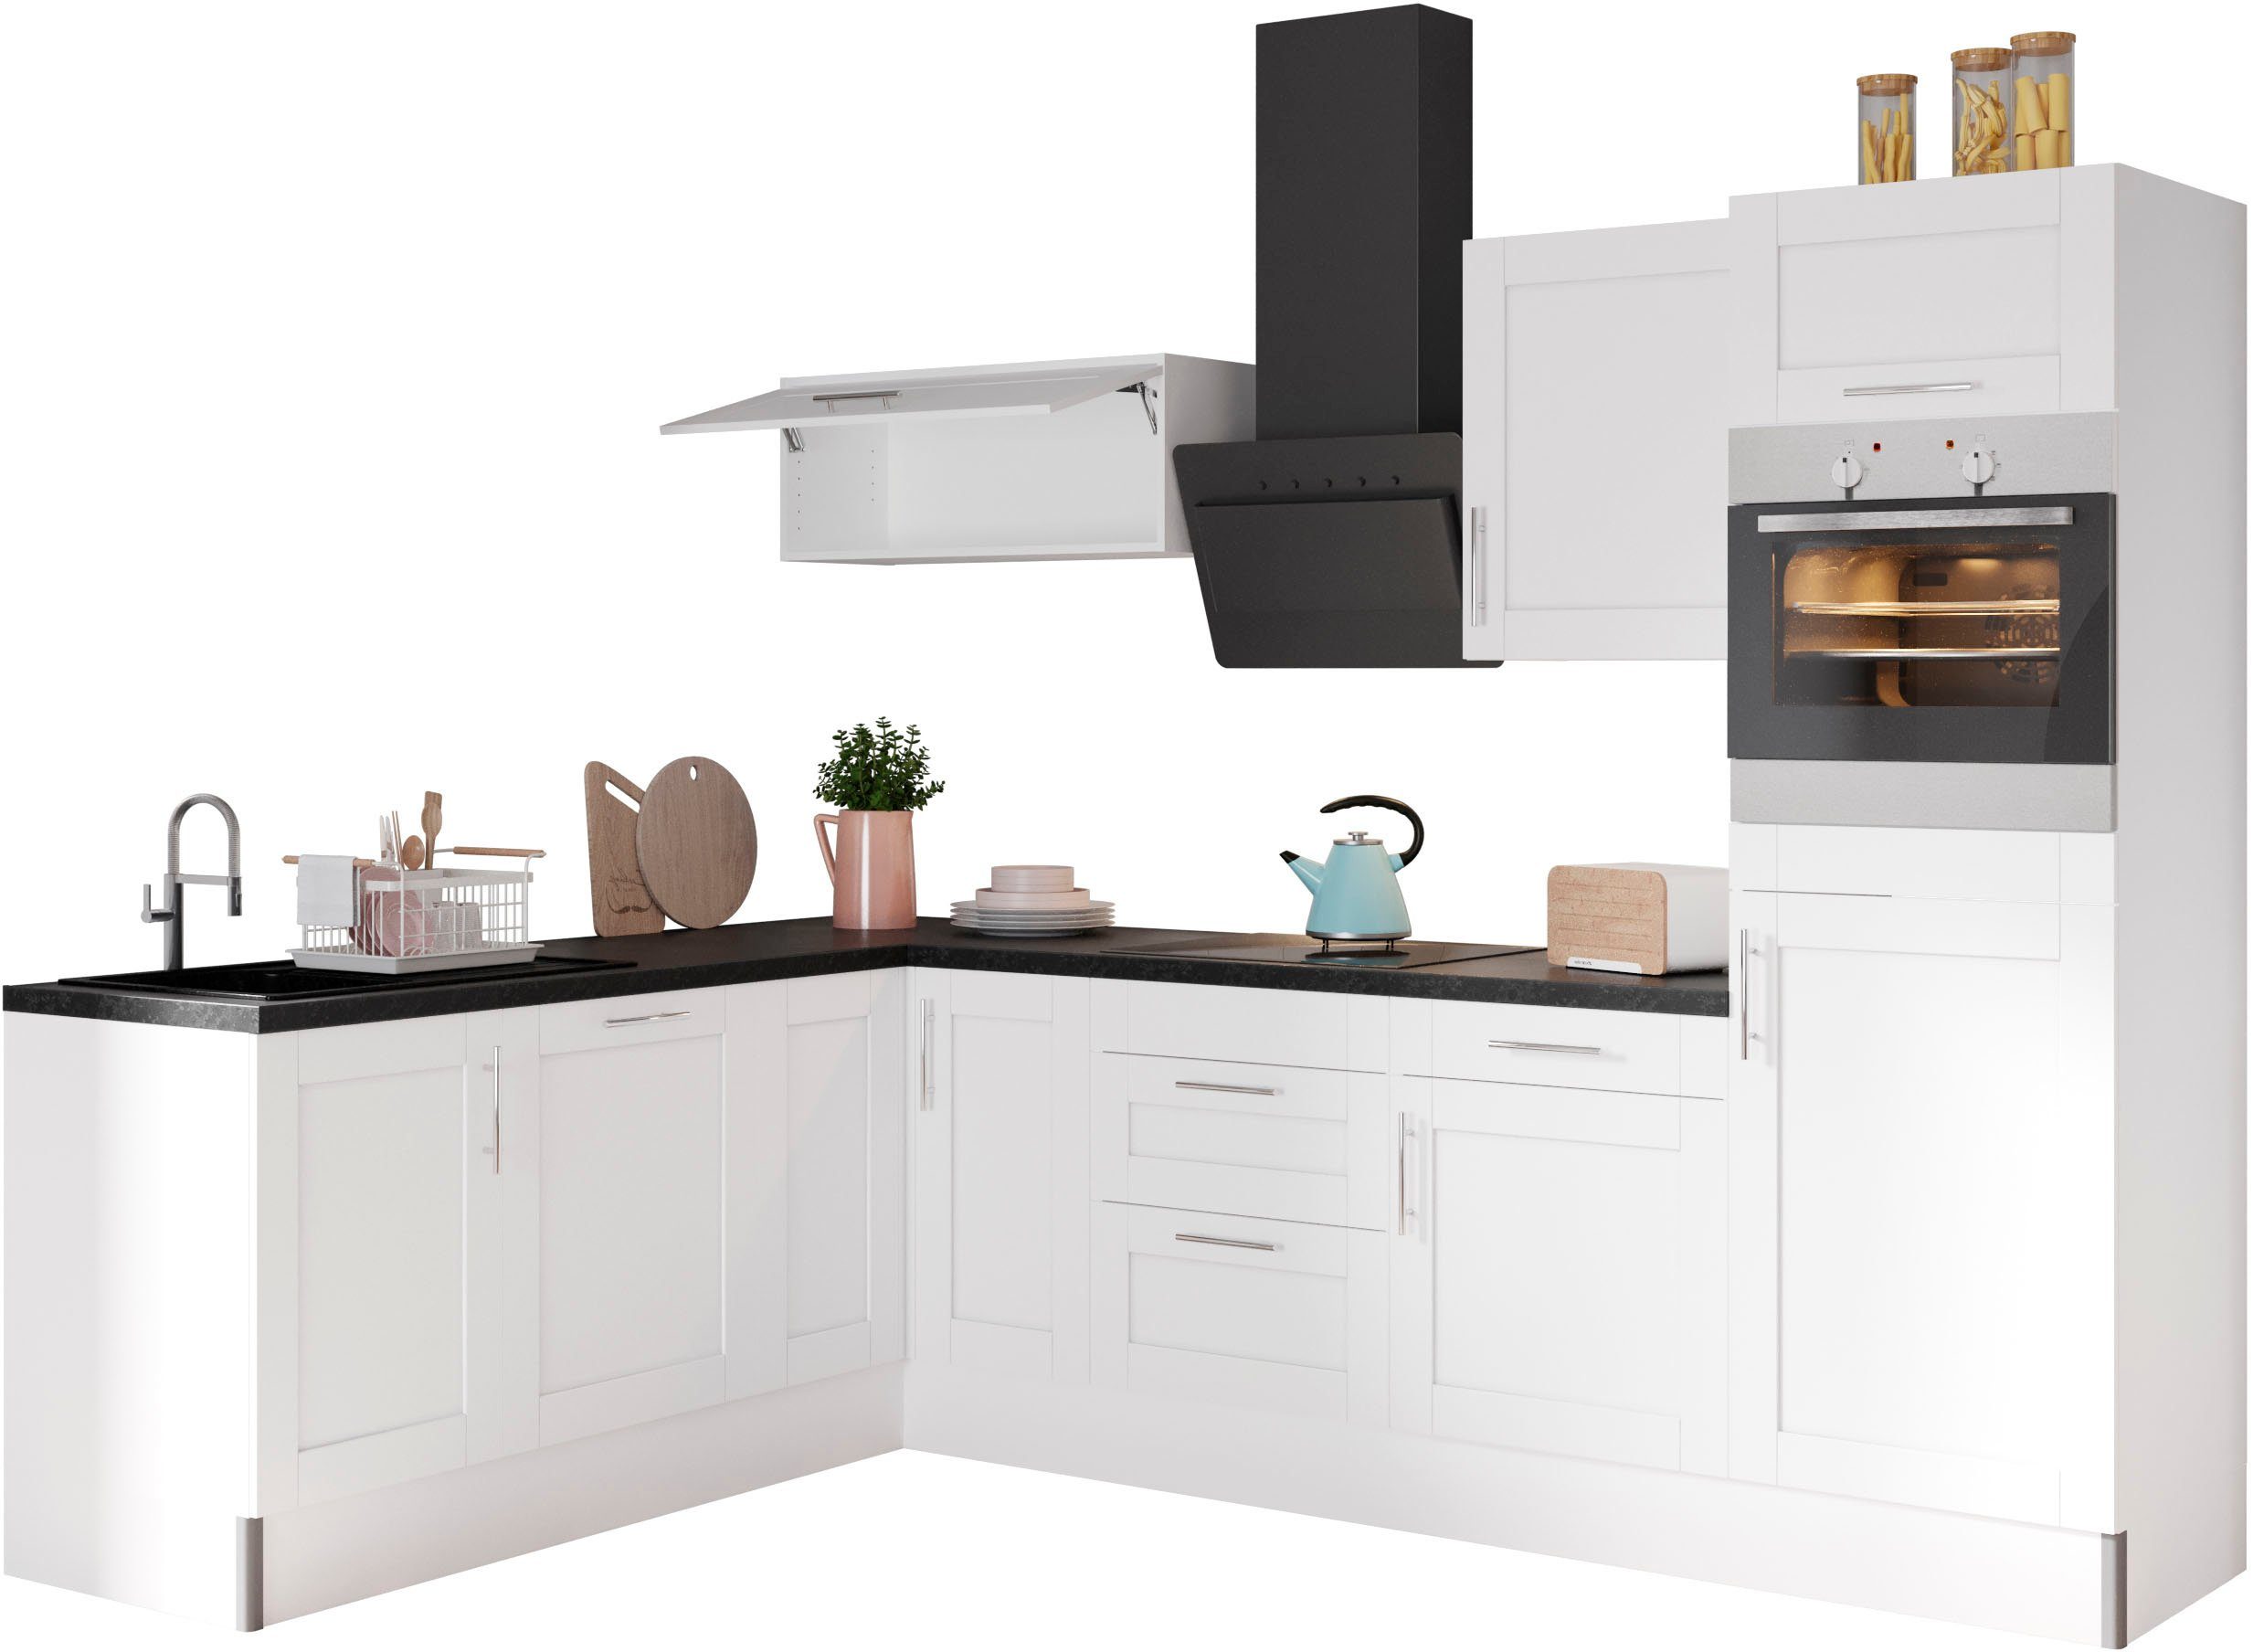 OPTIFIT Küche Ahus, 200 x 270 cm breit, ohne E-Geräte, Soft Close Funktion, MDF Fronten schwarz|weiß